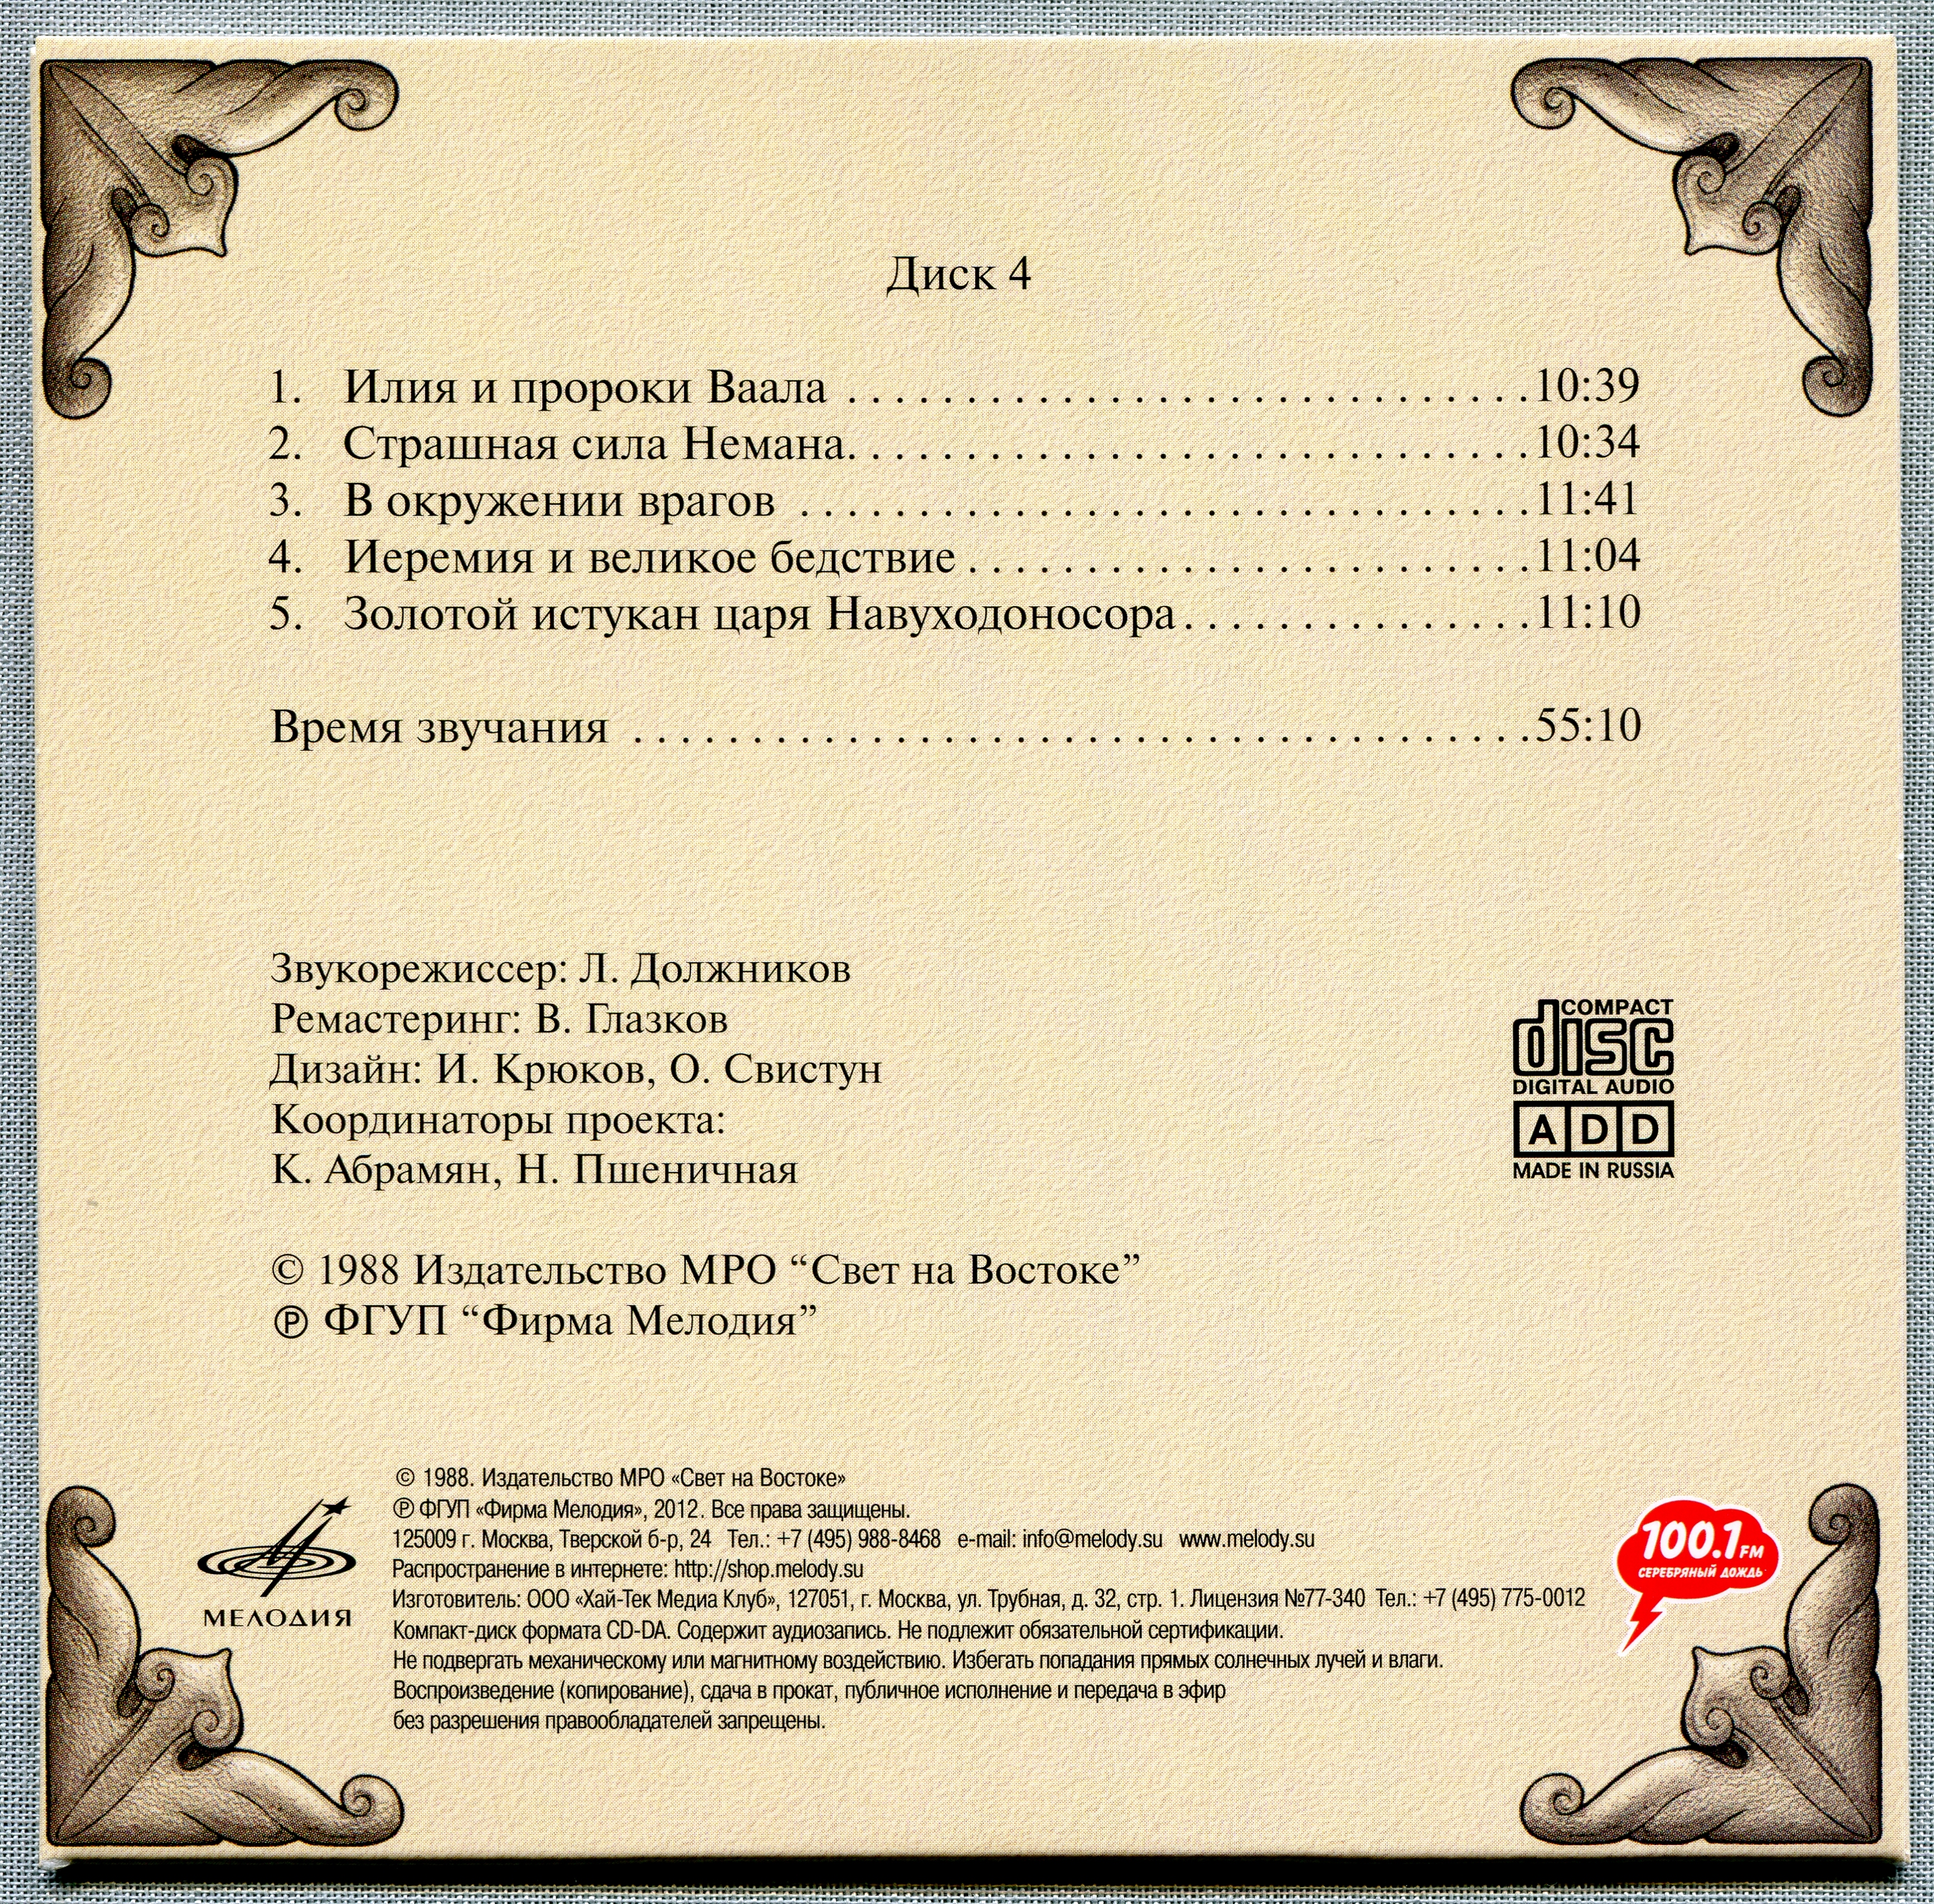 Иннокентий Смоктуновский - Библейские истории (8 CD)